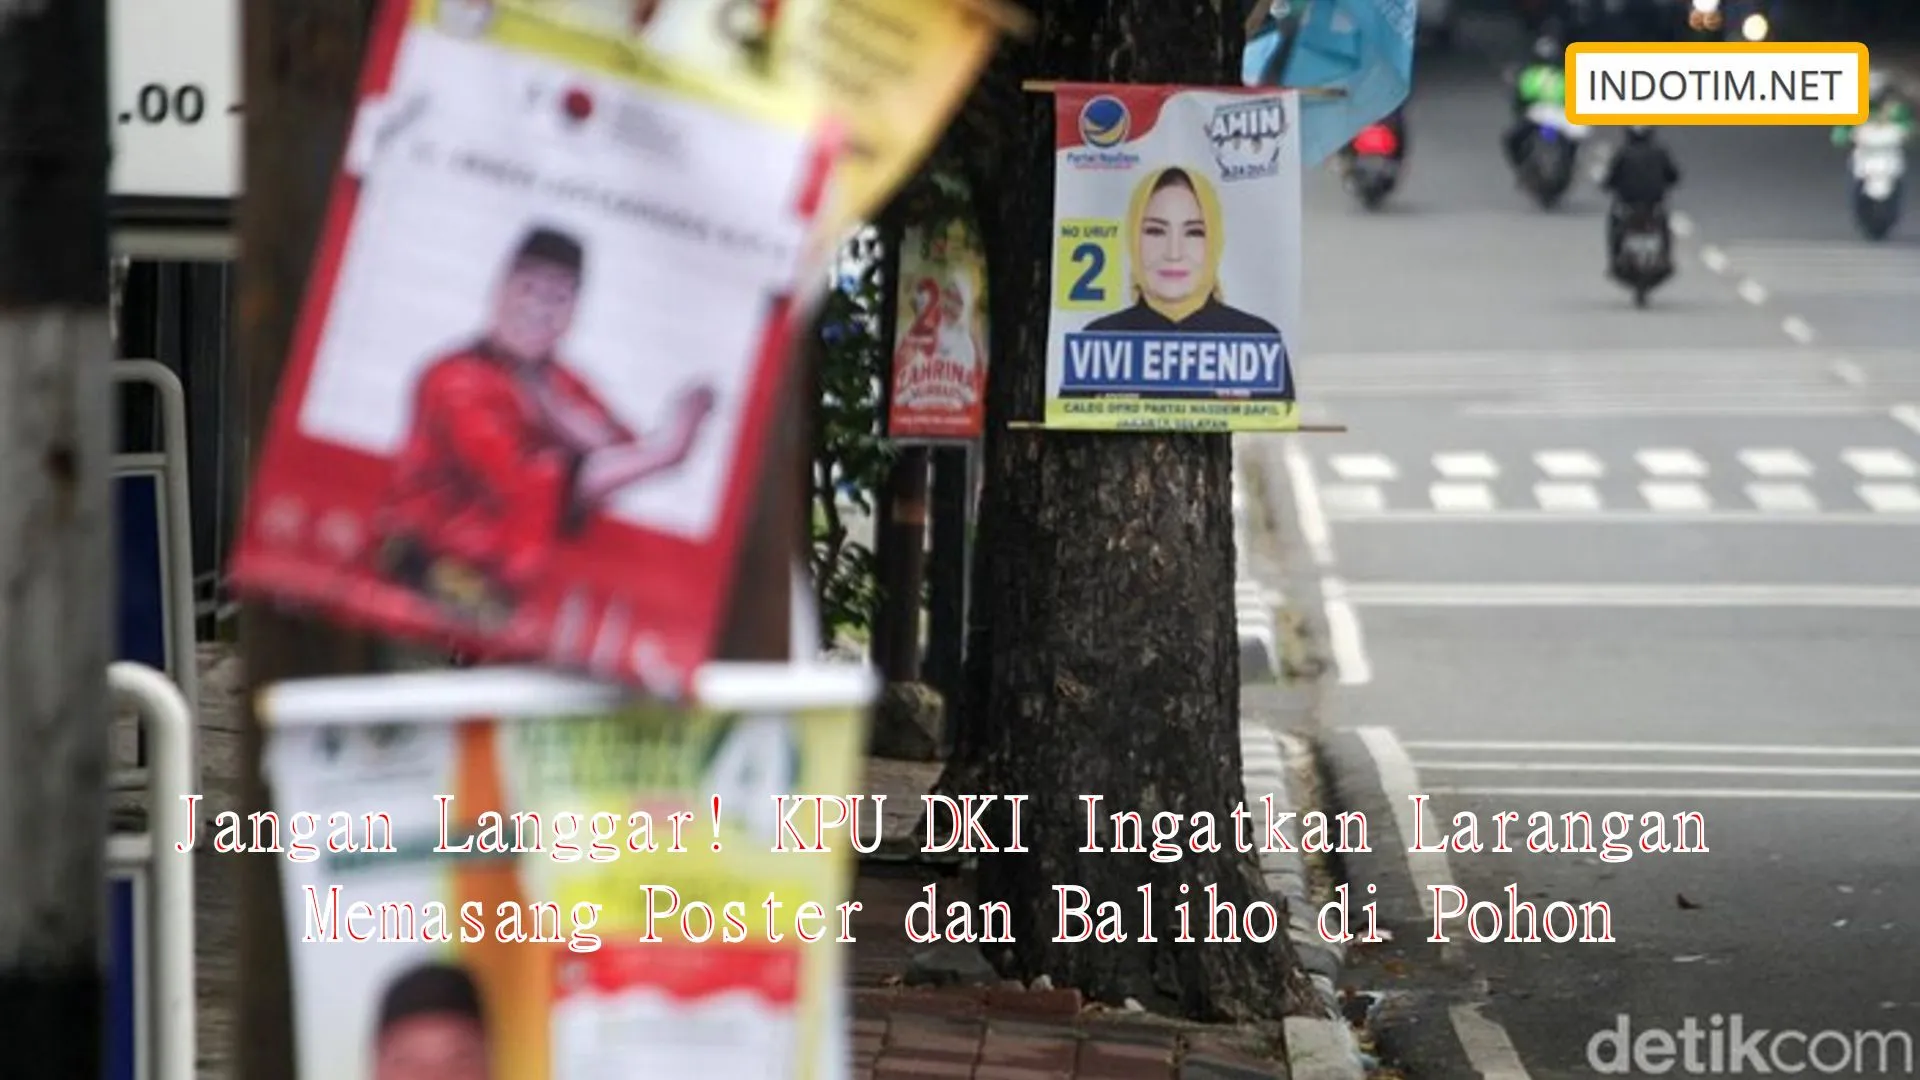 Jangan Langgar! KPU DKI Ingatkan Larangan Memasang Poster dan Baliho di Pohon